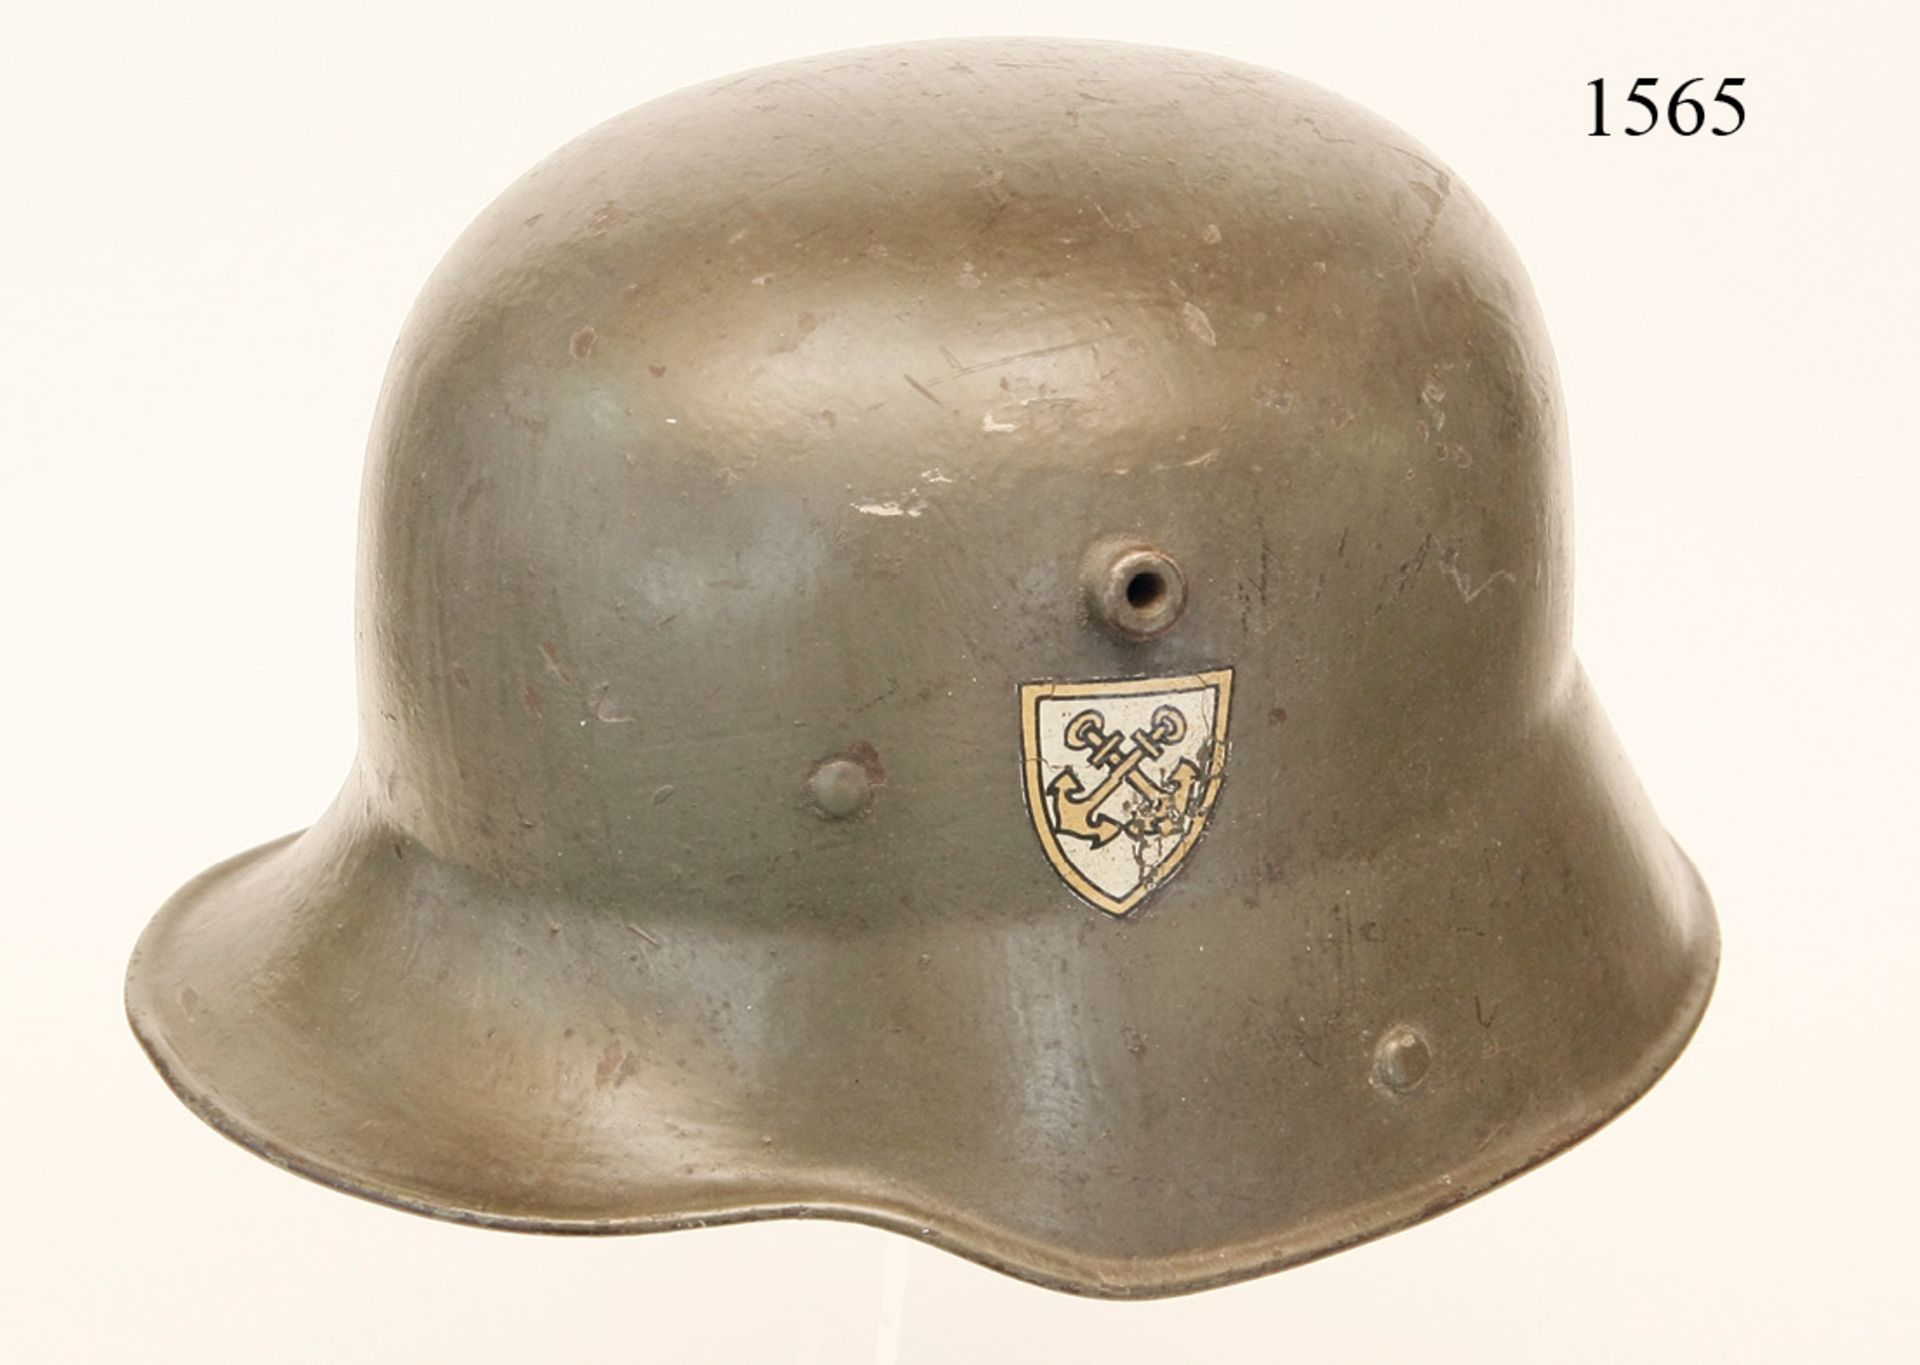 Stahlhelm M/16, Reichsmarine